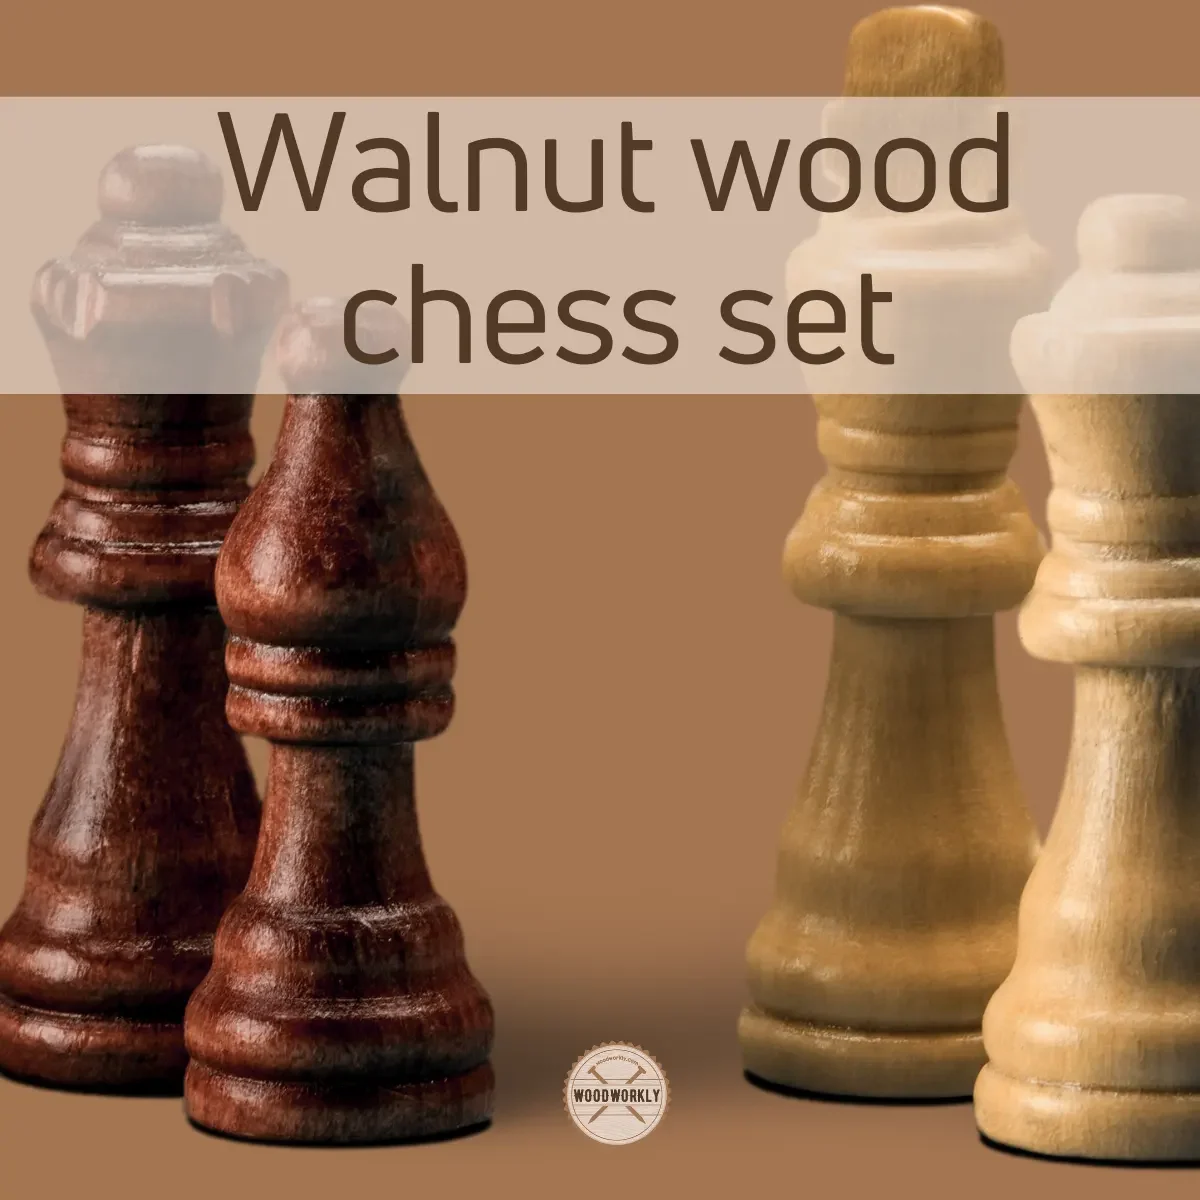 Walnut wood chess set